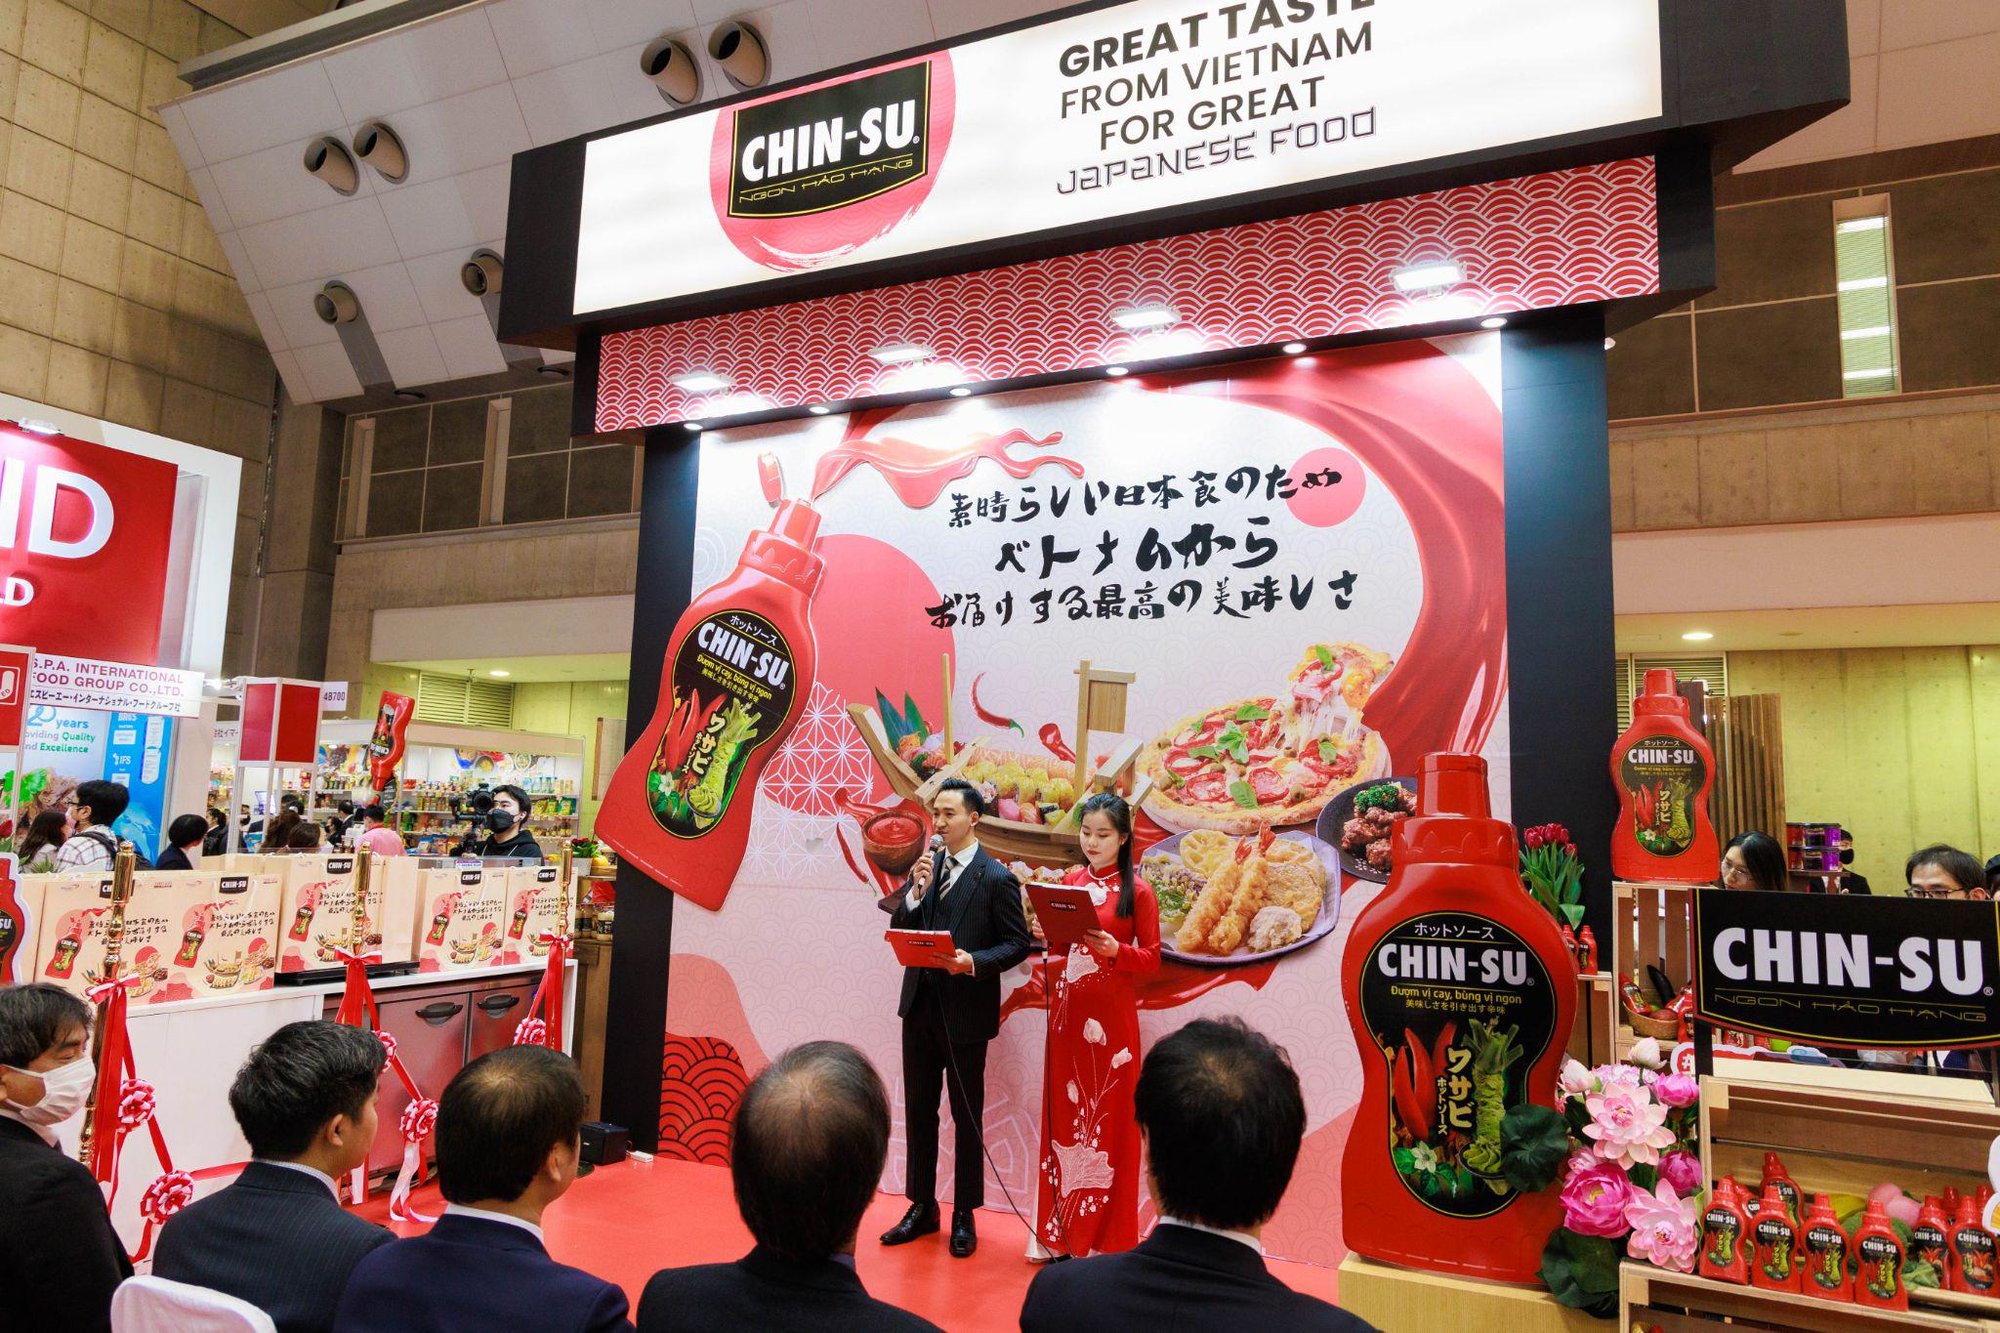 Tương ớt Chin-su gây ấn tượng mạnh tại Nhật Bản, ra mắt tận 5 hương vị mới - Ảnh 1.